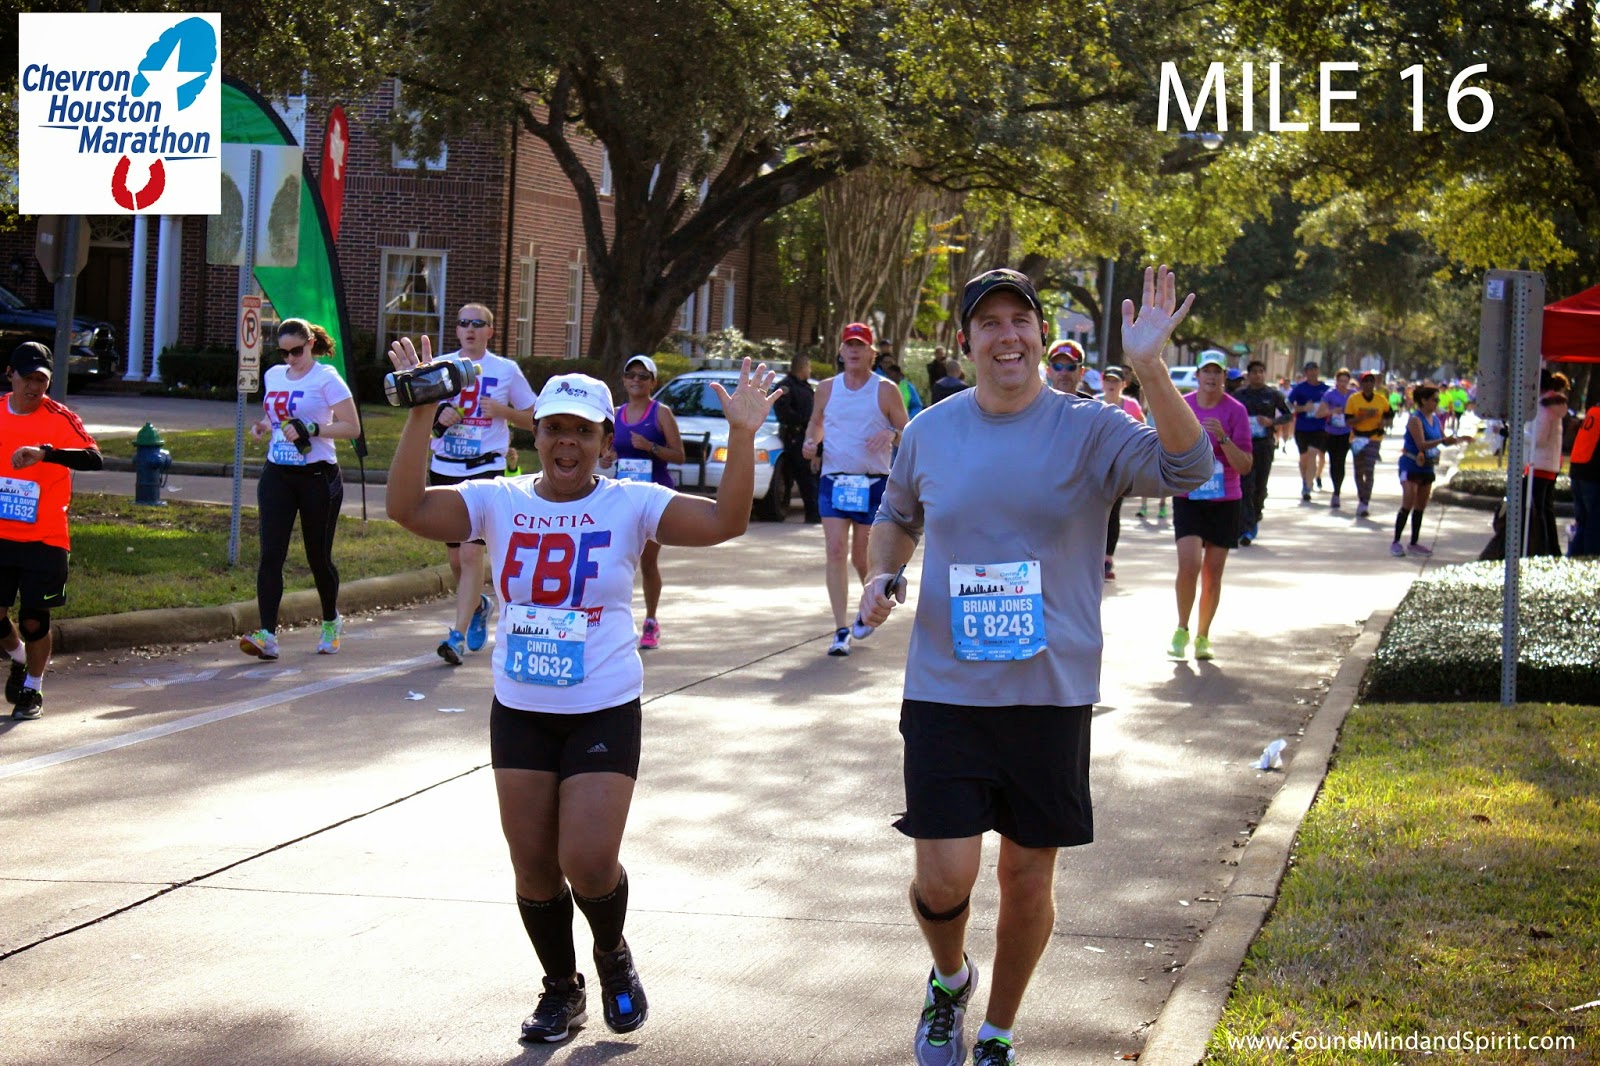 Smiles at Mile 16 with Simply Cintia -  Chevron Houston Marathon 